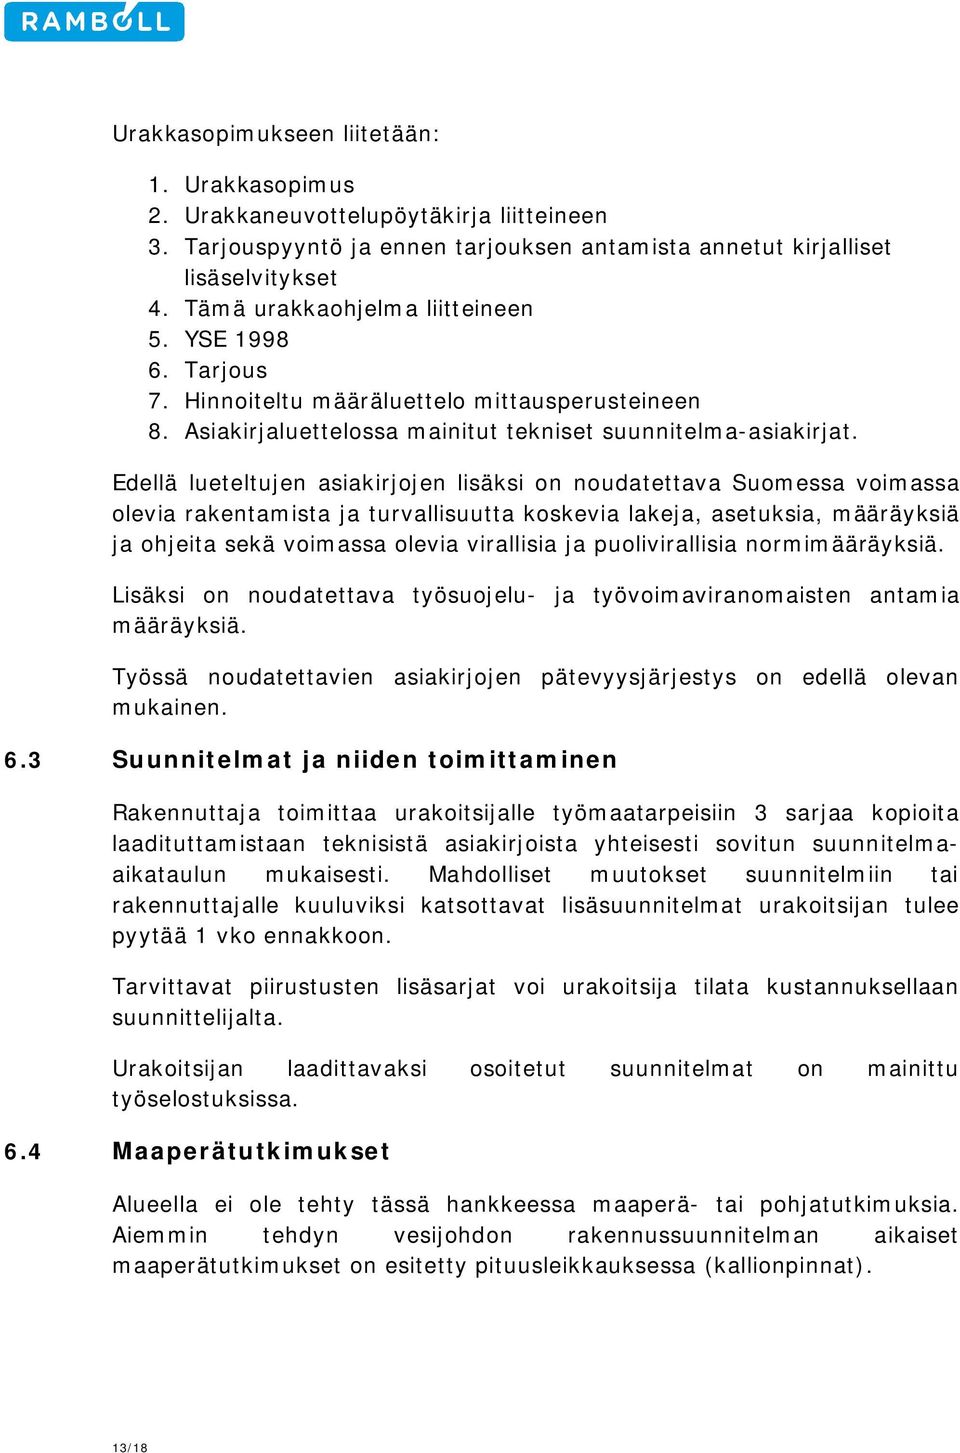 Edellä lueteltujen asiakirjojen lisäksi on noudatettava Suomessa voimassa olevia rakentamista ja turvallisuutta koskevia lakeja, asetuksia, määräyksiä ja ohjeita sekä voimassa olevia virallisia ja